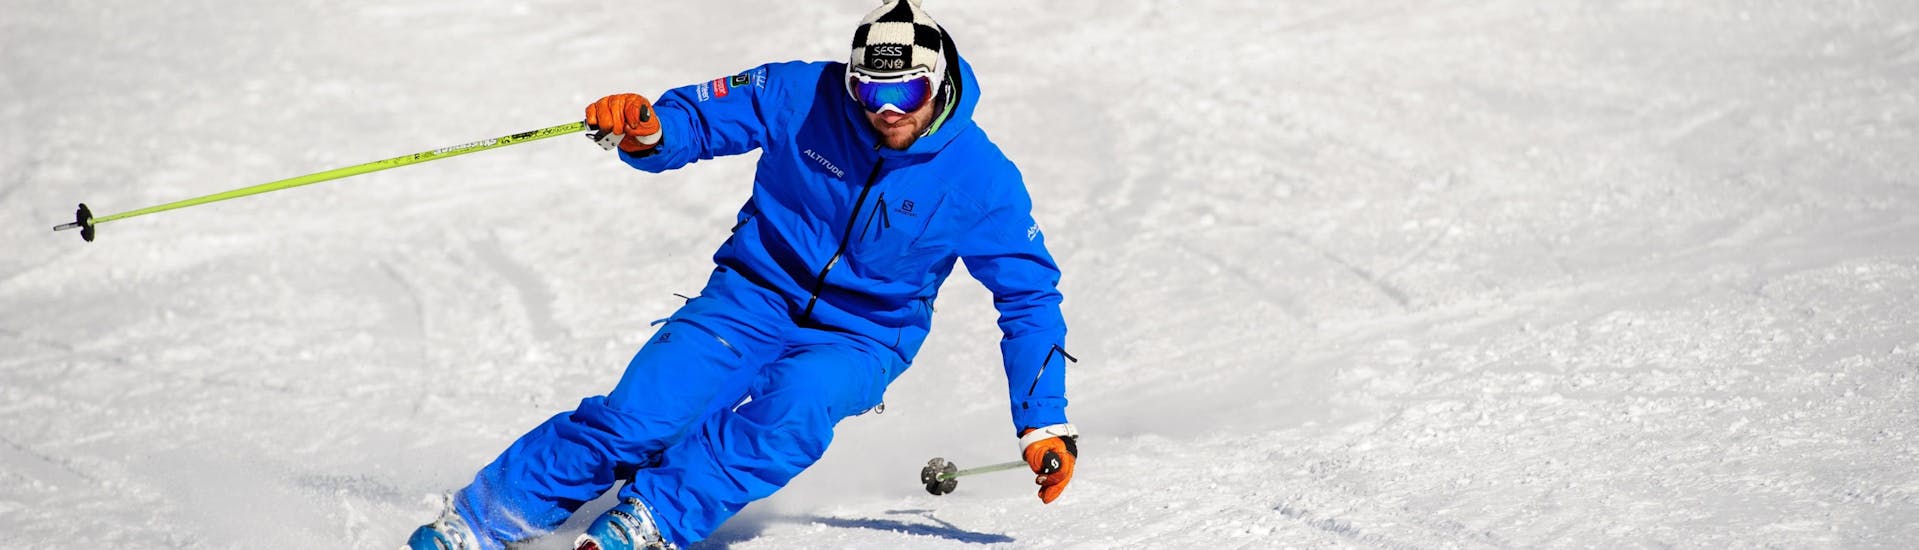 Un esquiador entrena durante las Clases particulares de Freeride en Verbier con Altitude Ski School Verbier & Gstaad.